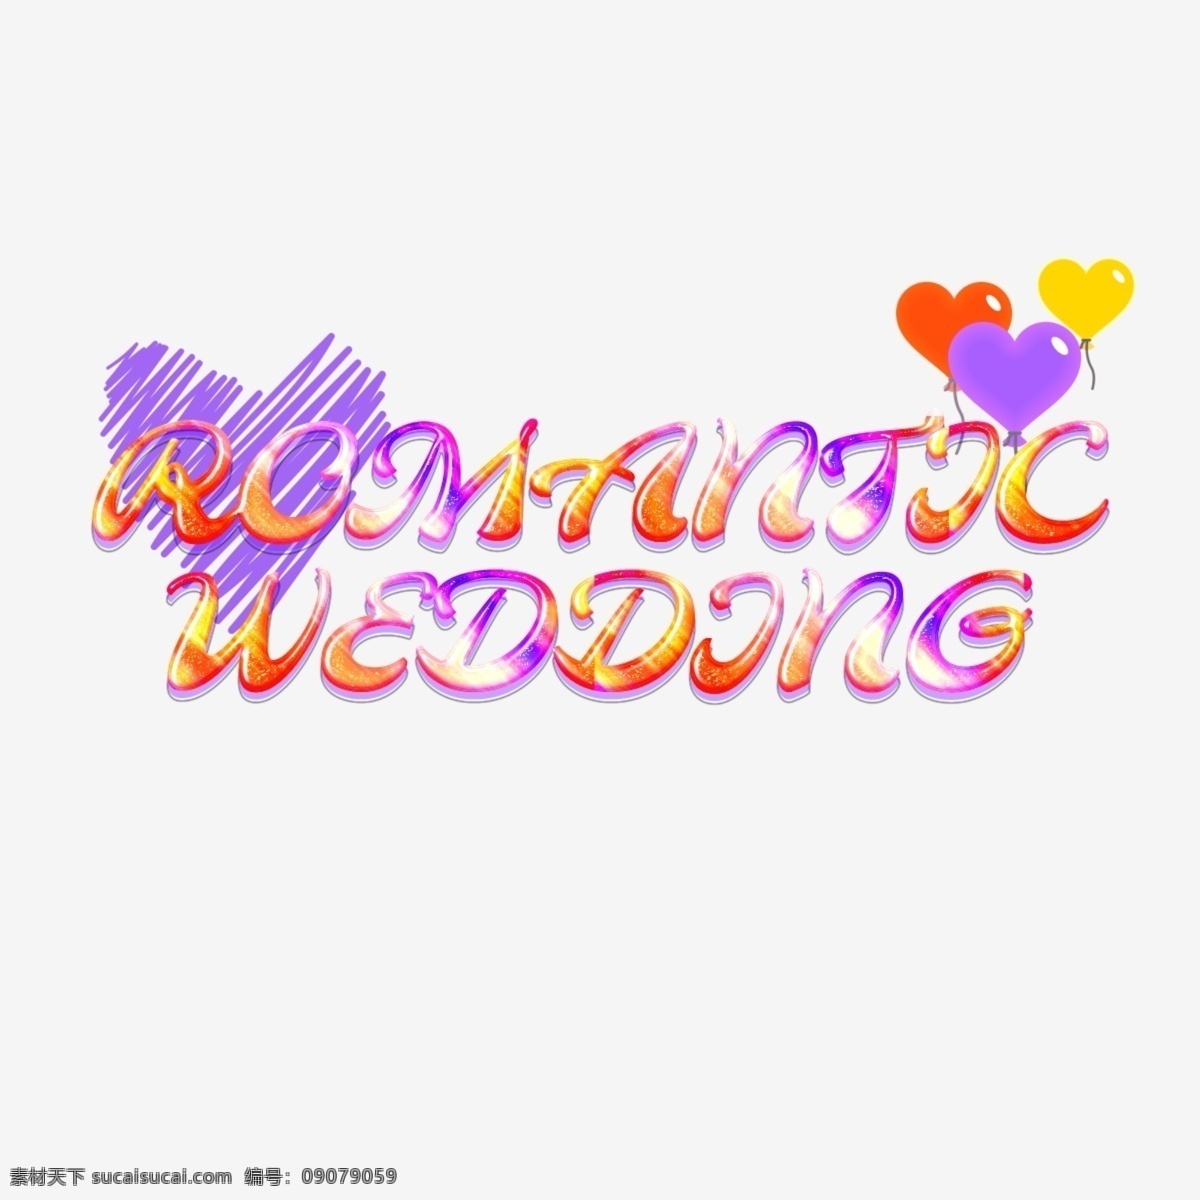 气球 五颜六色 浪漫婚礼 字体 浪漫的婚礼 浪漫 婚礼 心 彩色字体 字体设计 创作的 造影 3d 3d效果